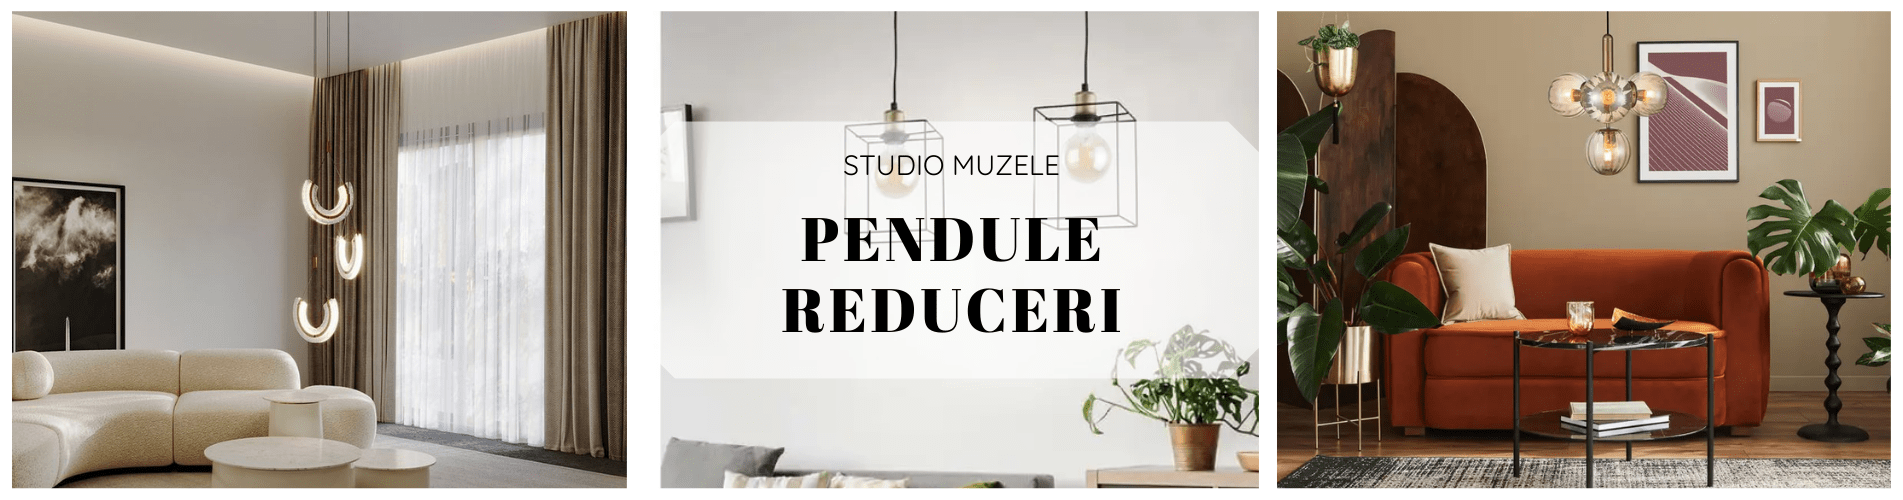 Pendule - reduceri - banner principal